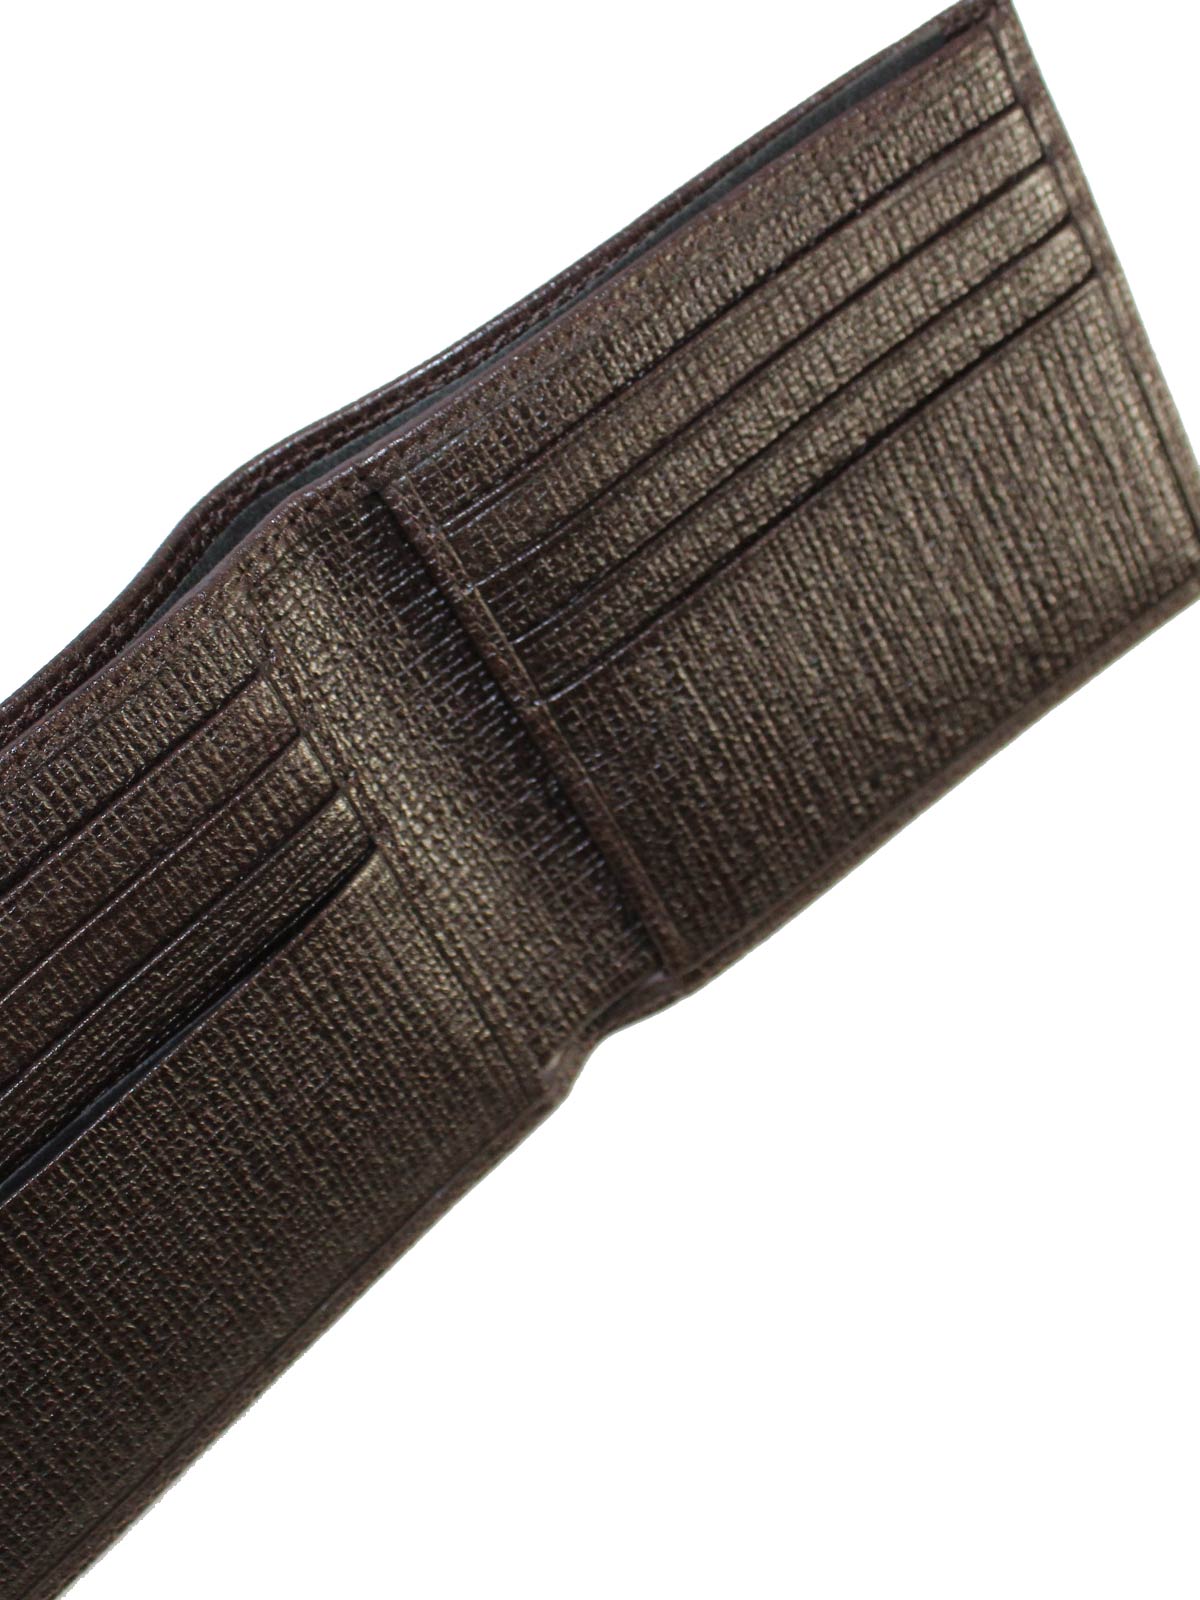 Kiton Wallet - Brown Grain Leather Men Wallet Bifold FINAL SALE